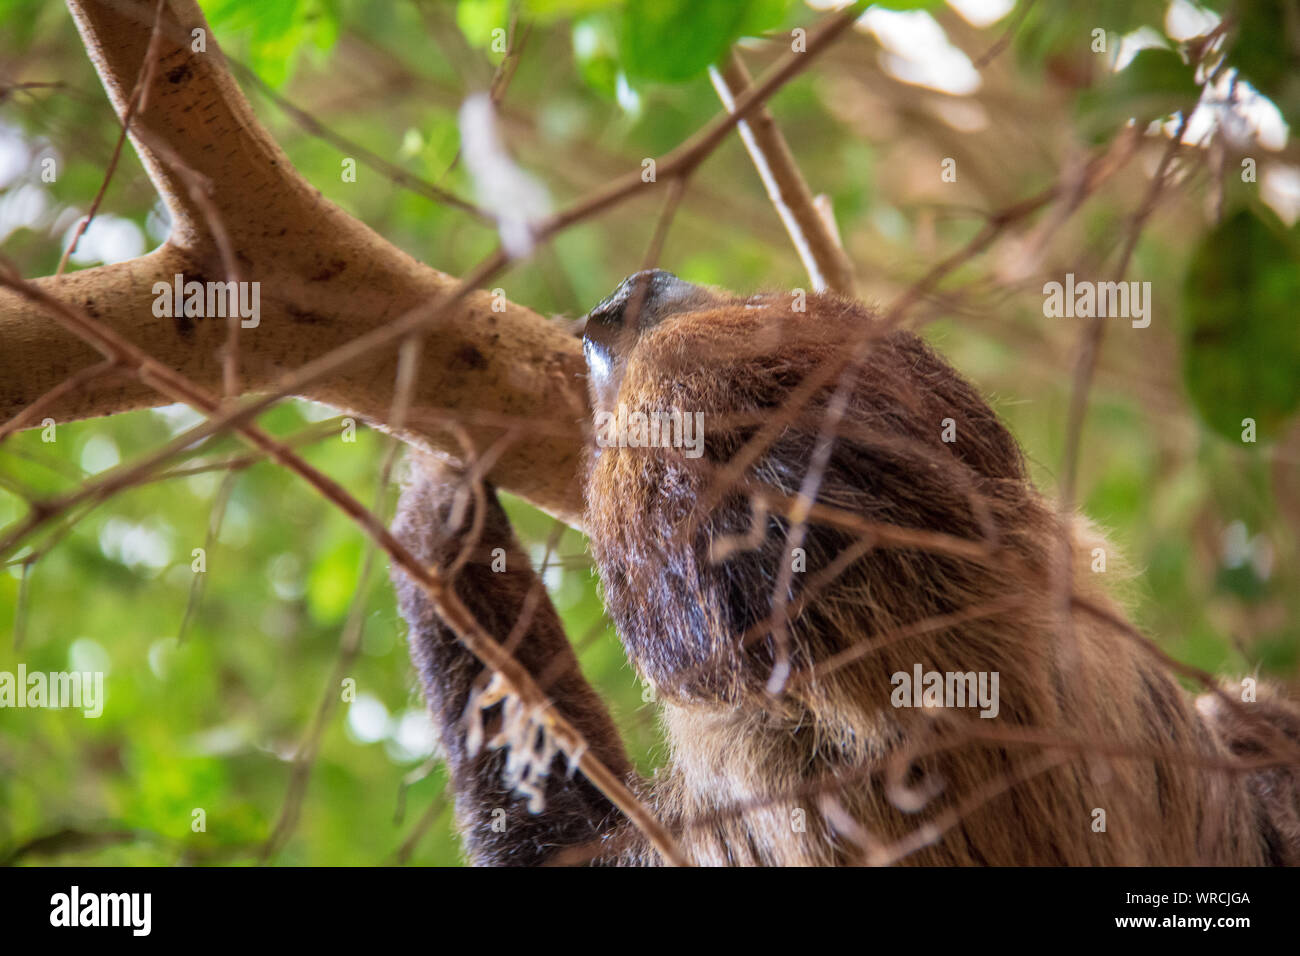 Vue rapprochée de la tête d'un à deux doigts de Linné sloth (Choloepus didactylus) tête en bas dans un arbre Banque D'Images